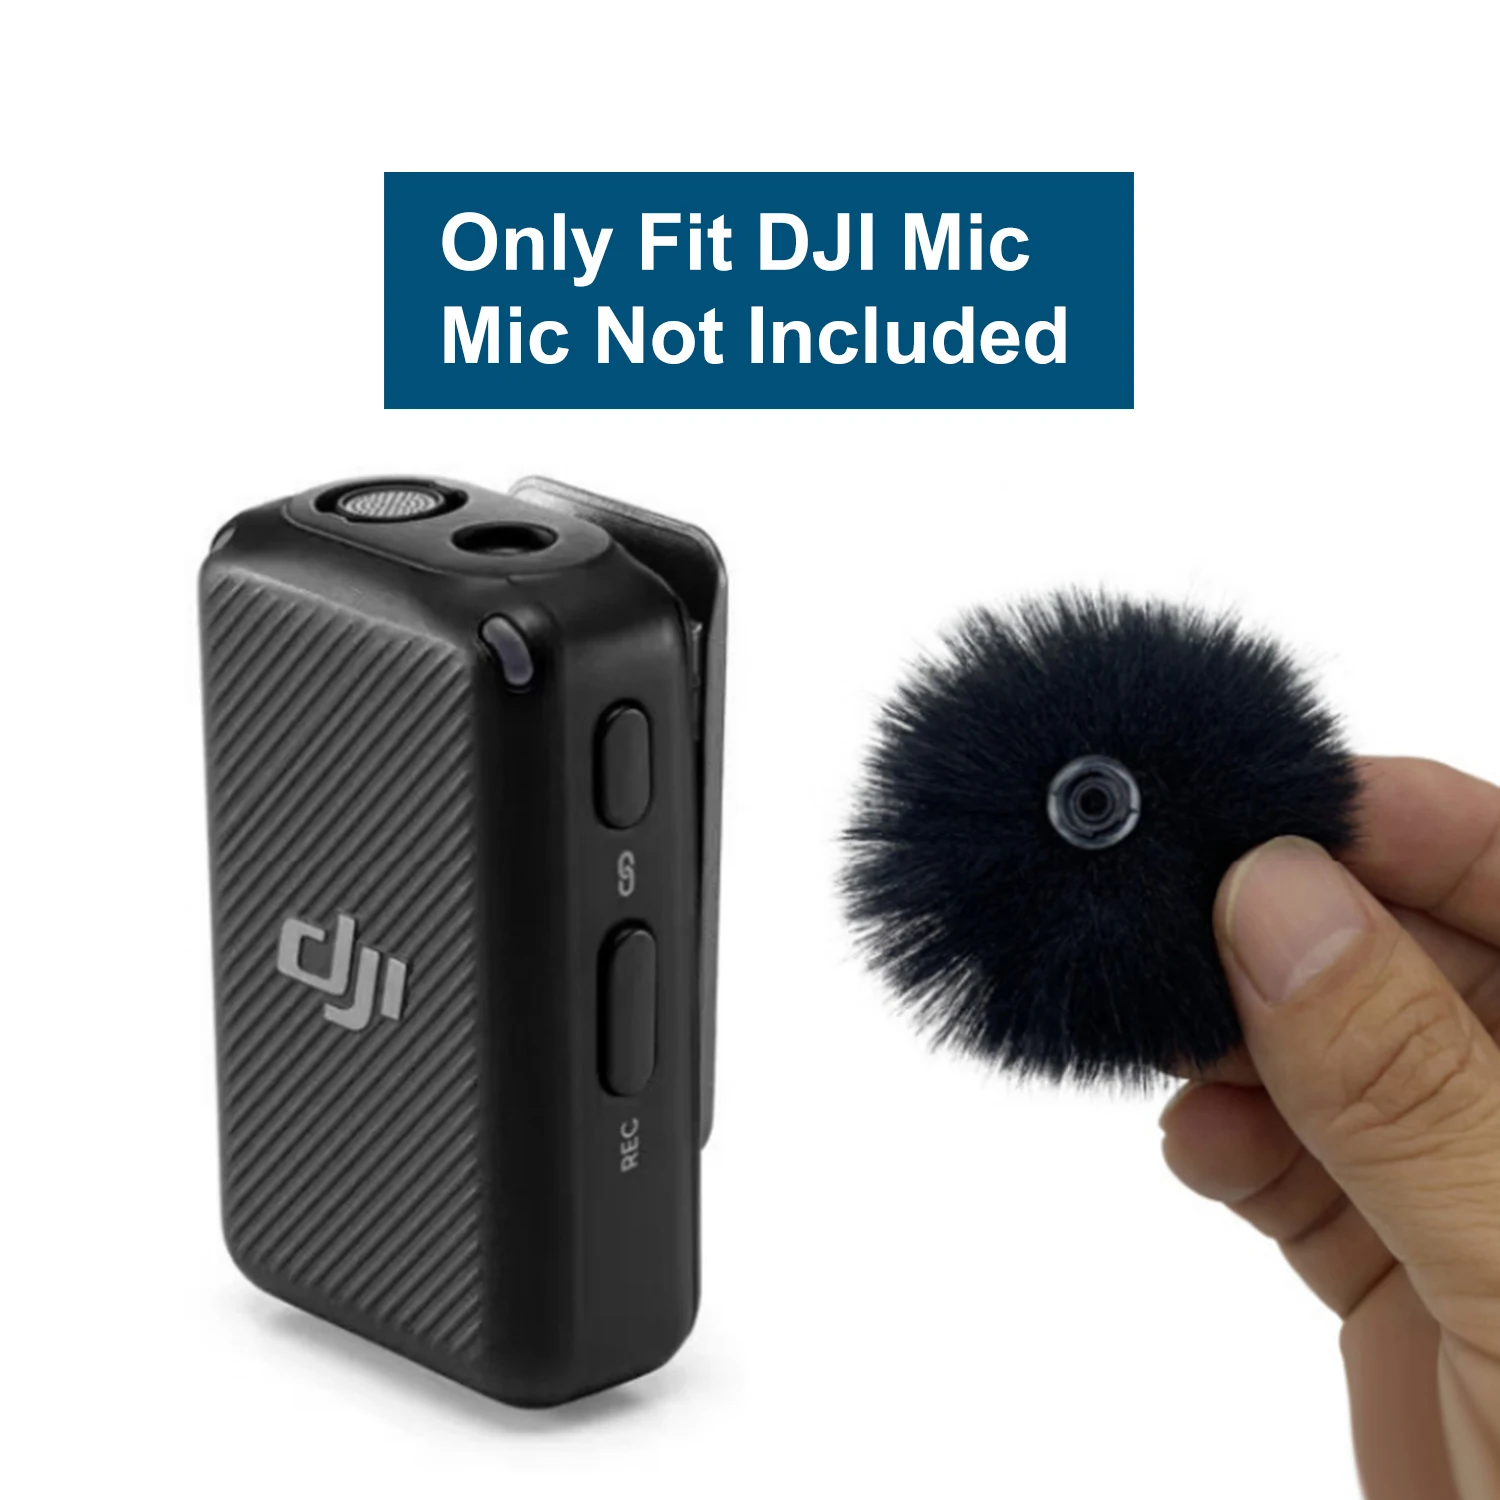 Micrófono para parabrisas compatible con micrófono de solapa inalámbrico  DJI MIC, funda peluda (paquete de 2)